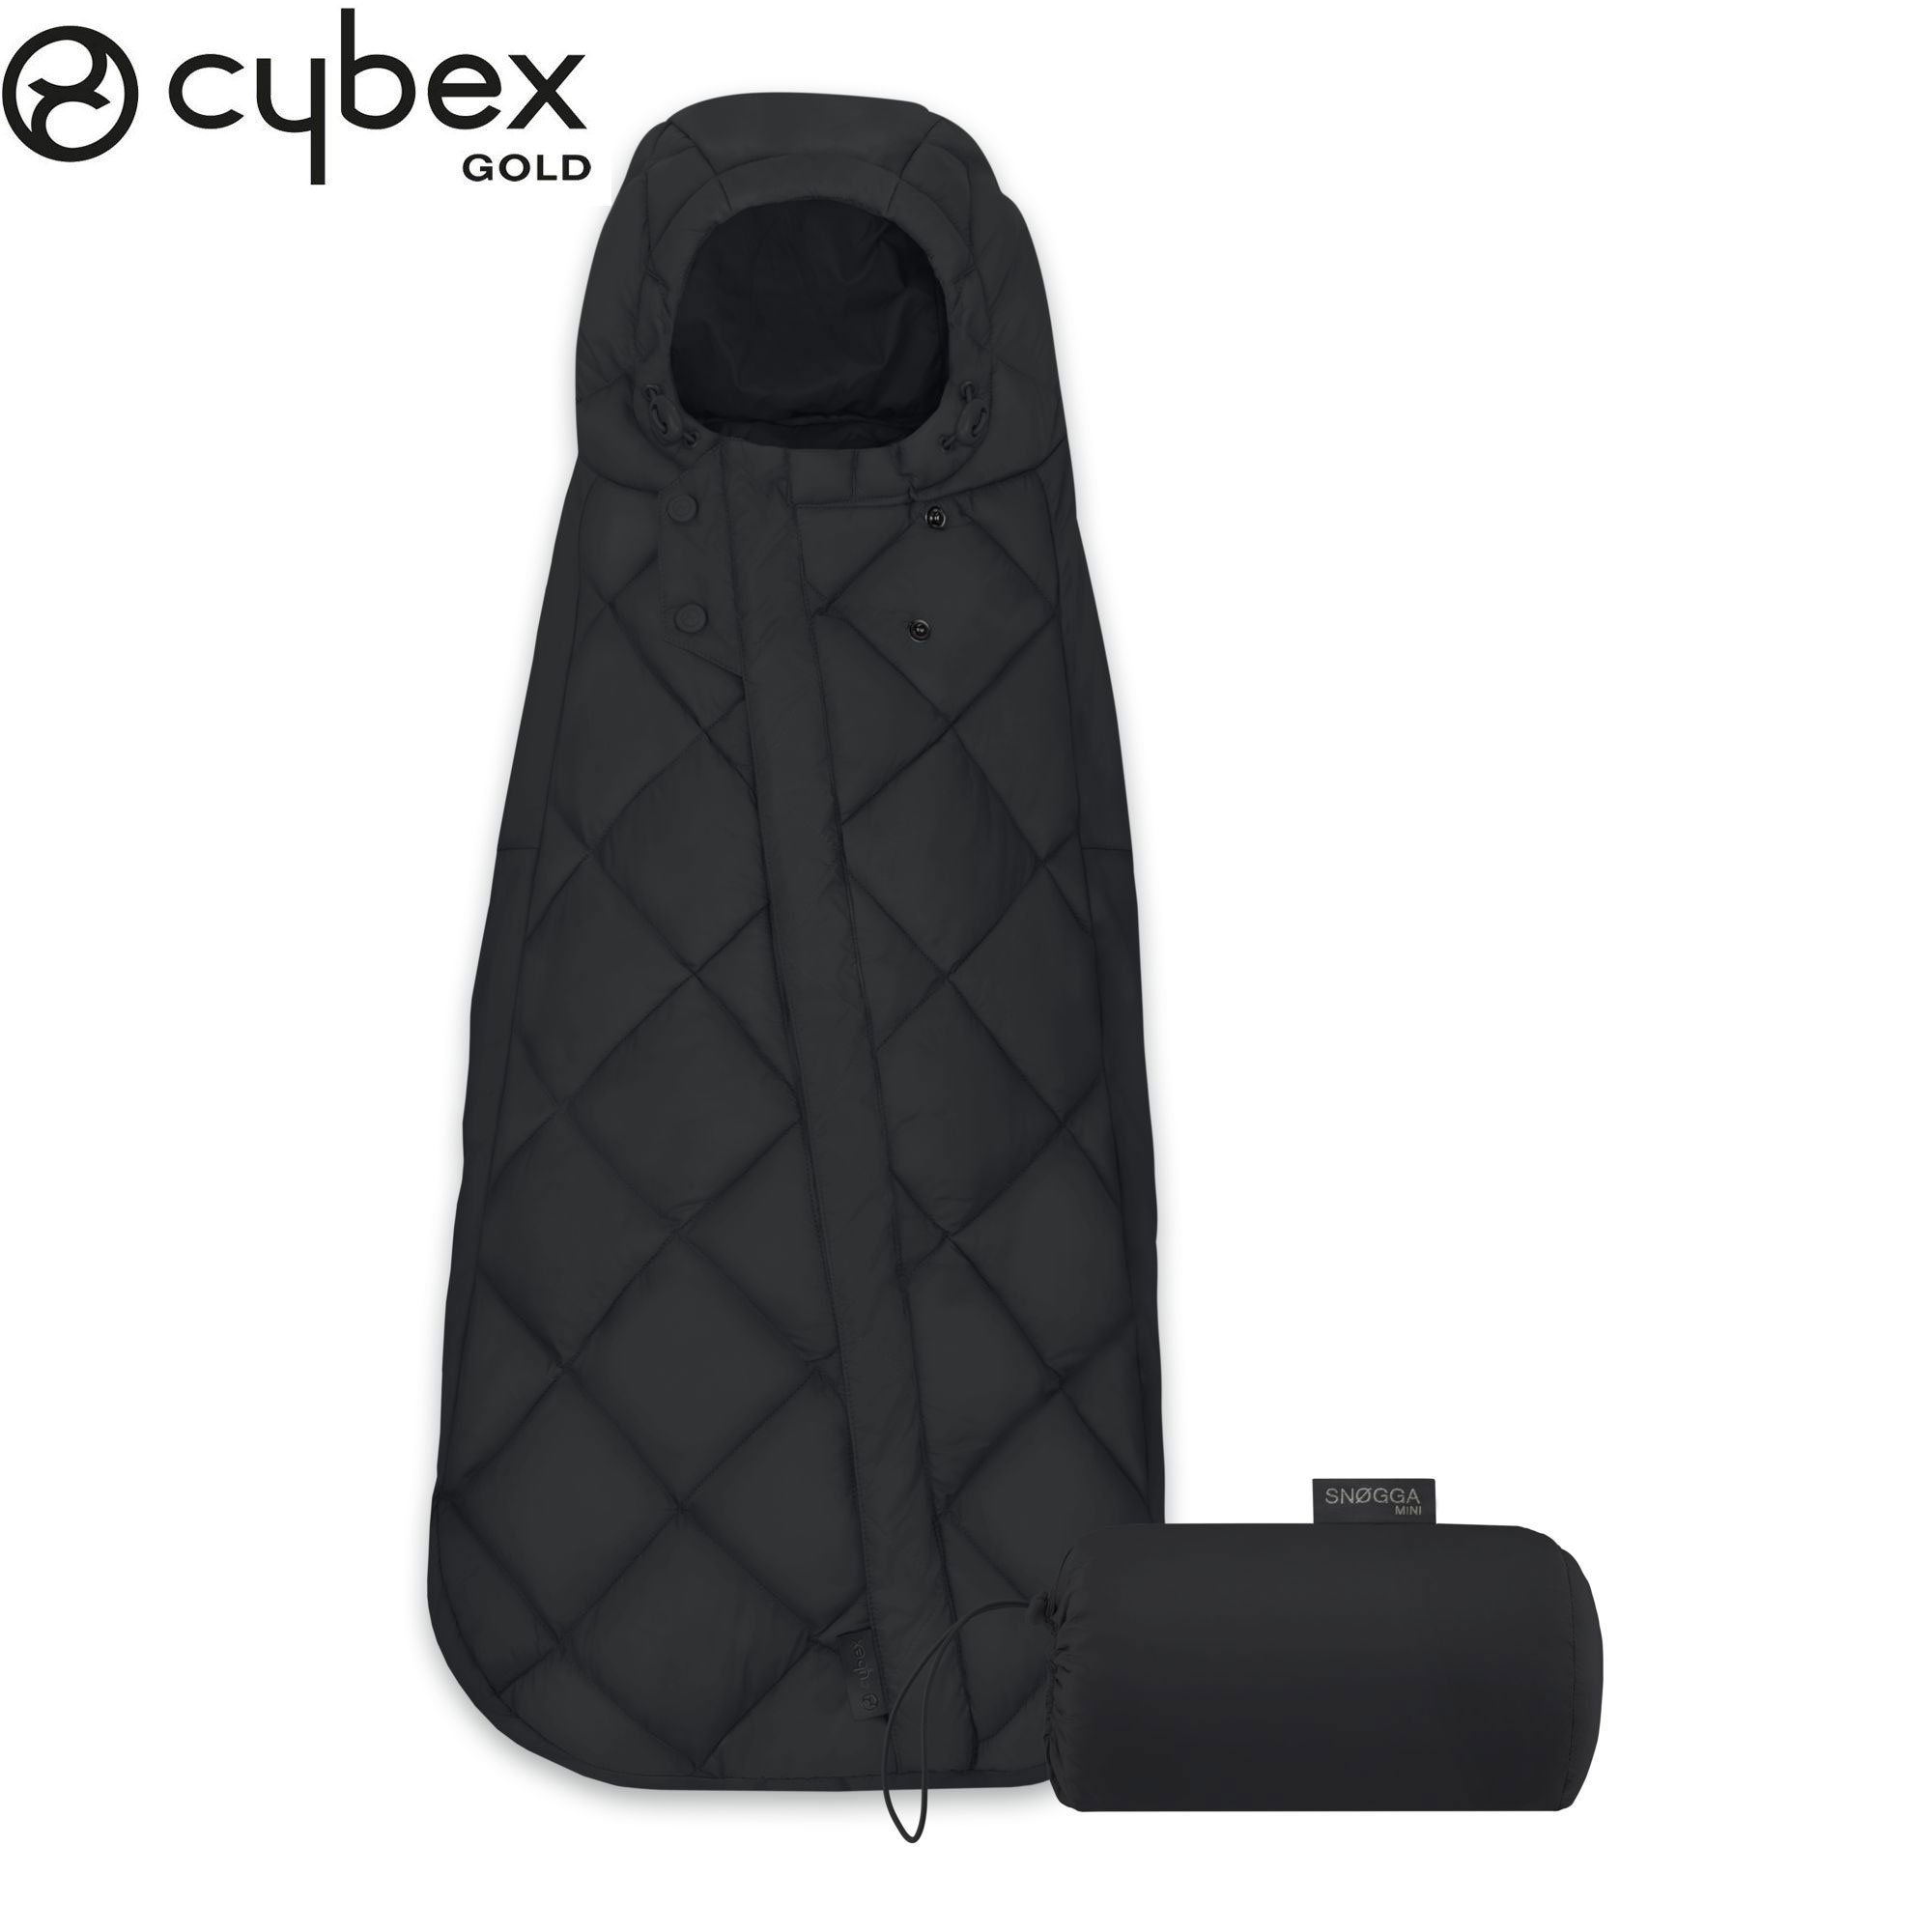 Cybex - Chancelière mini Snogga Deep black pour siège-auto